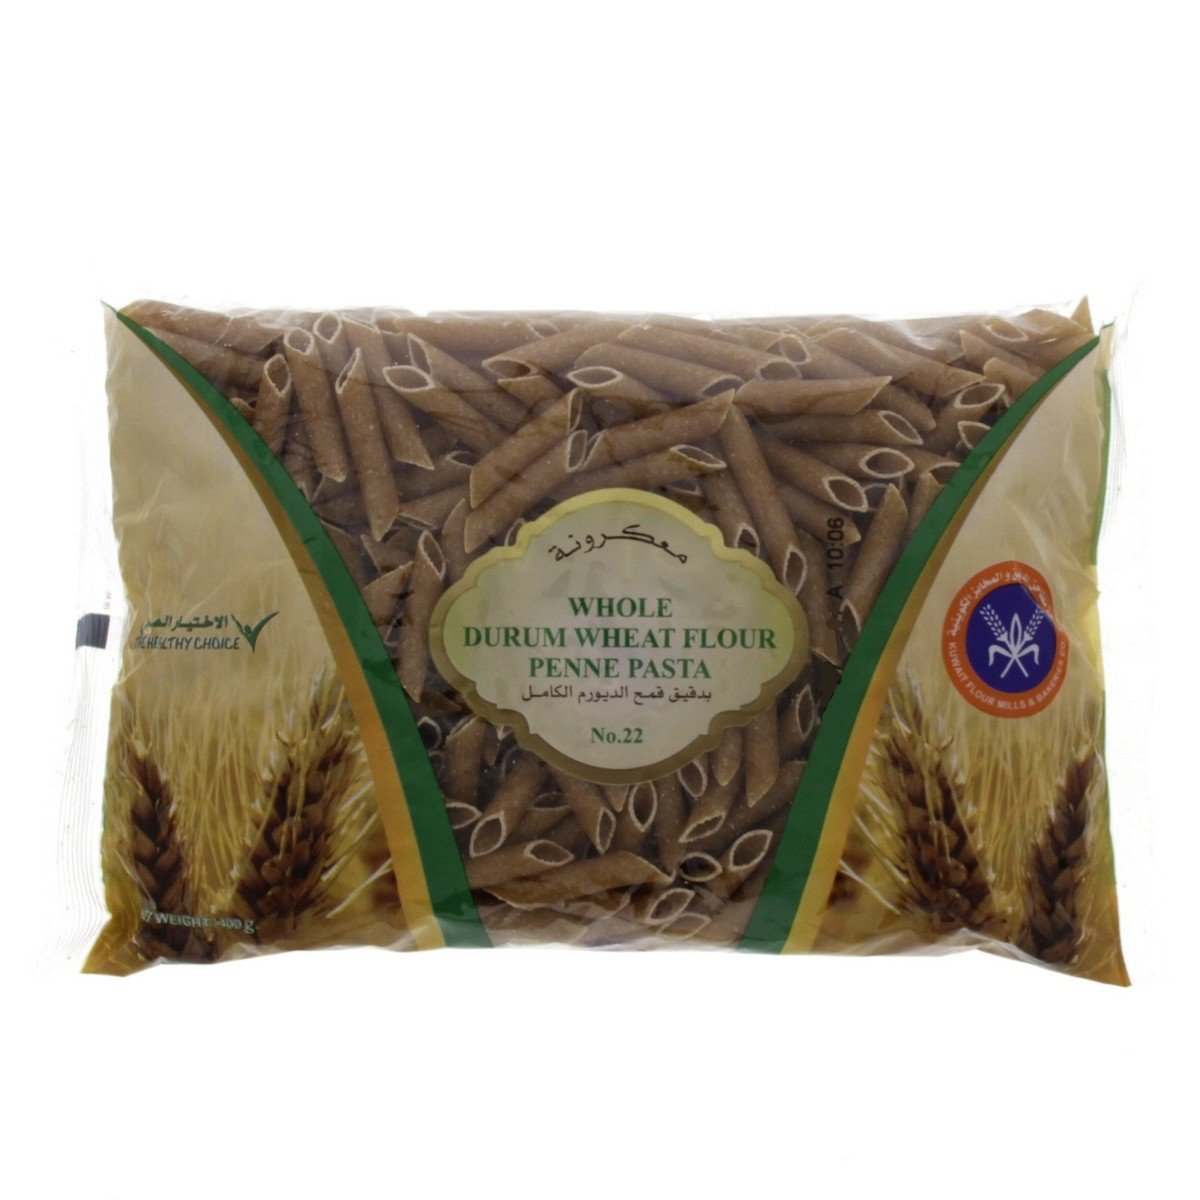 KFMBC Whole Durum Wheat Flour Penne Pasta No.22 400g